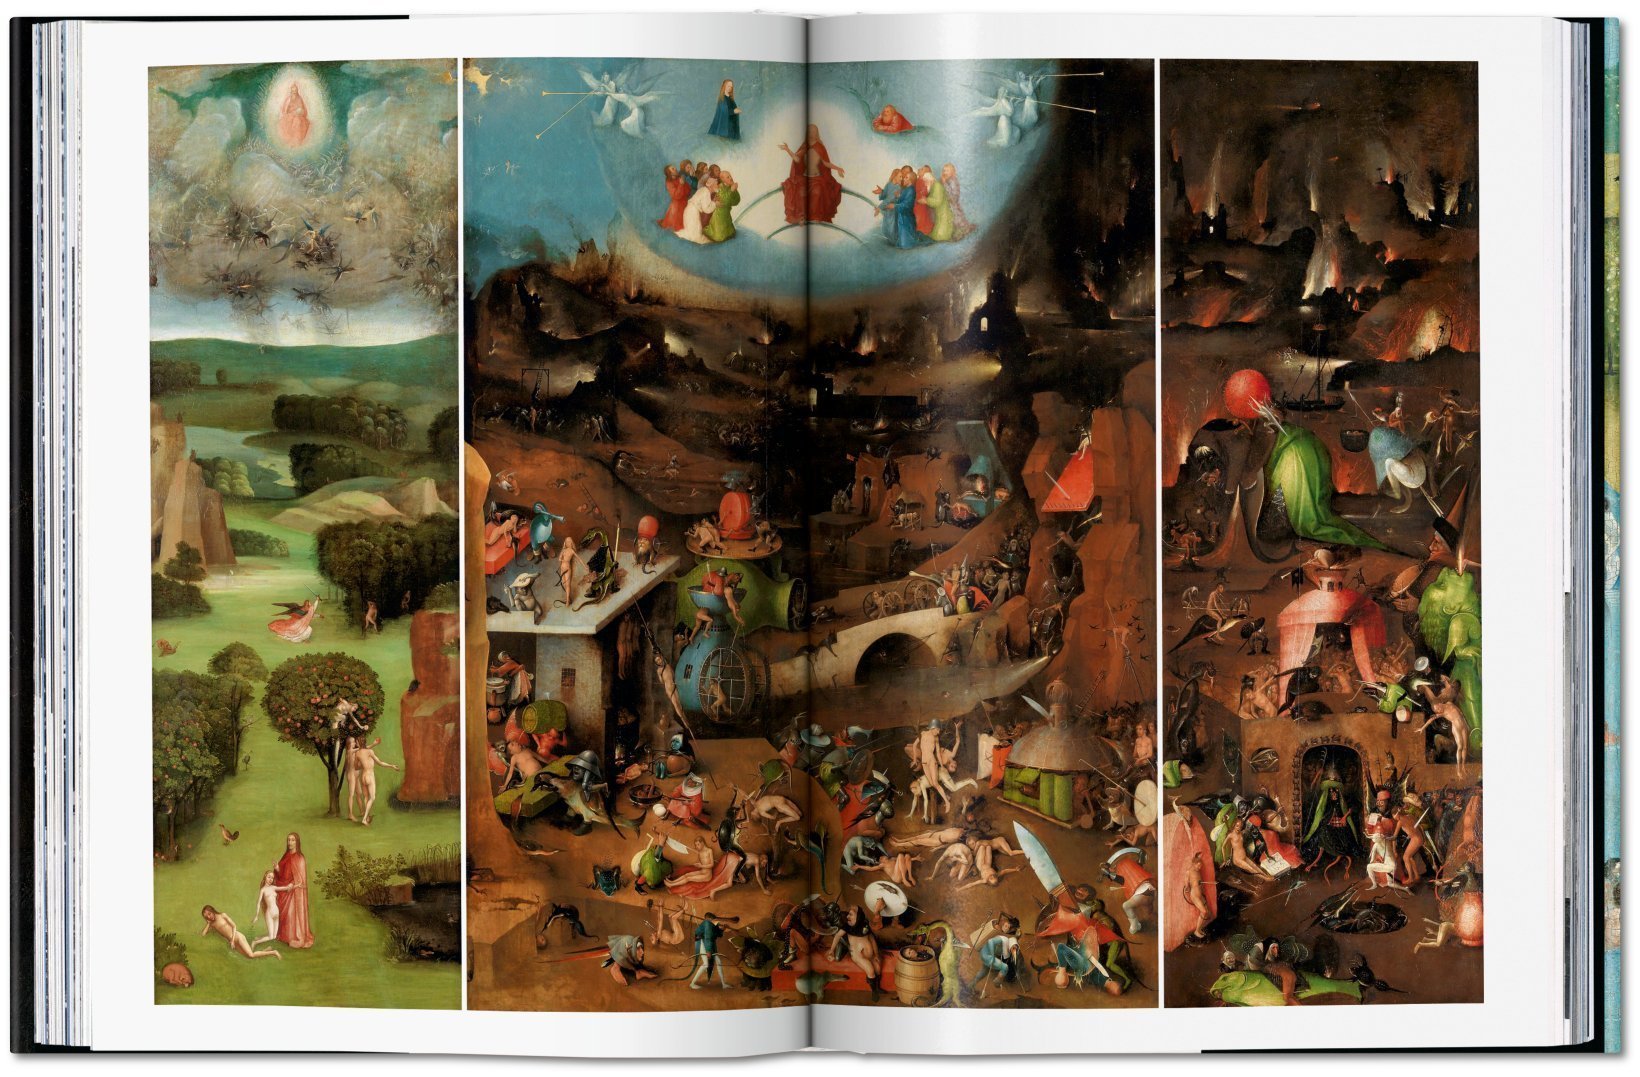 Hieronymus Bosch. Das vollständige Werk